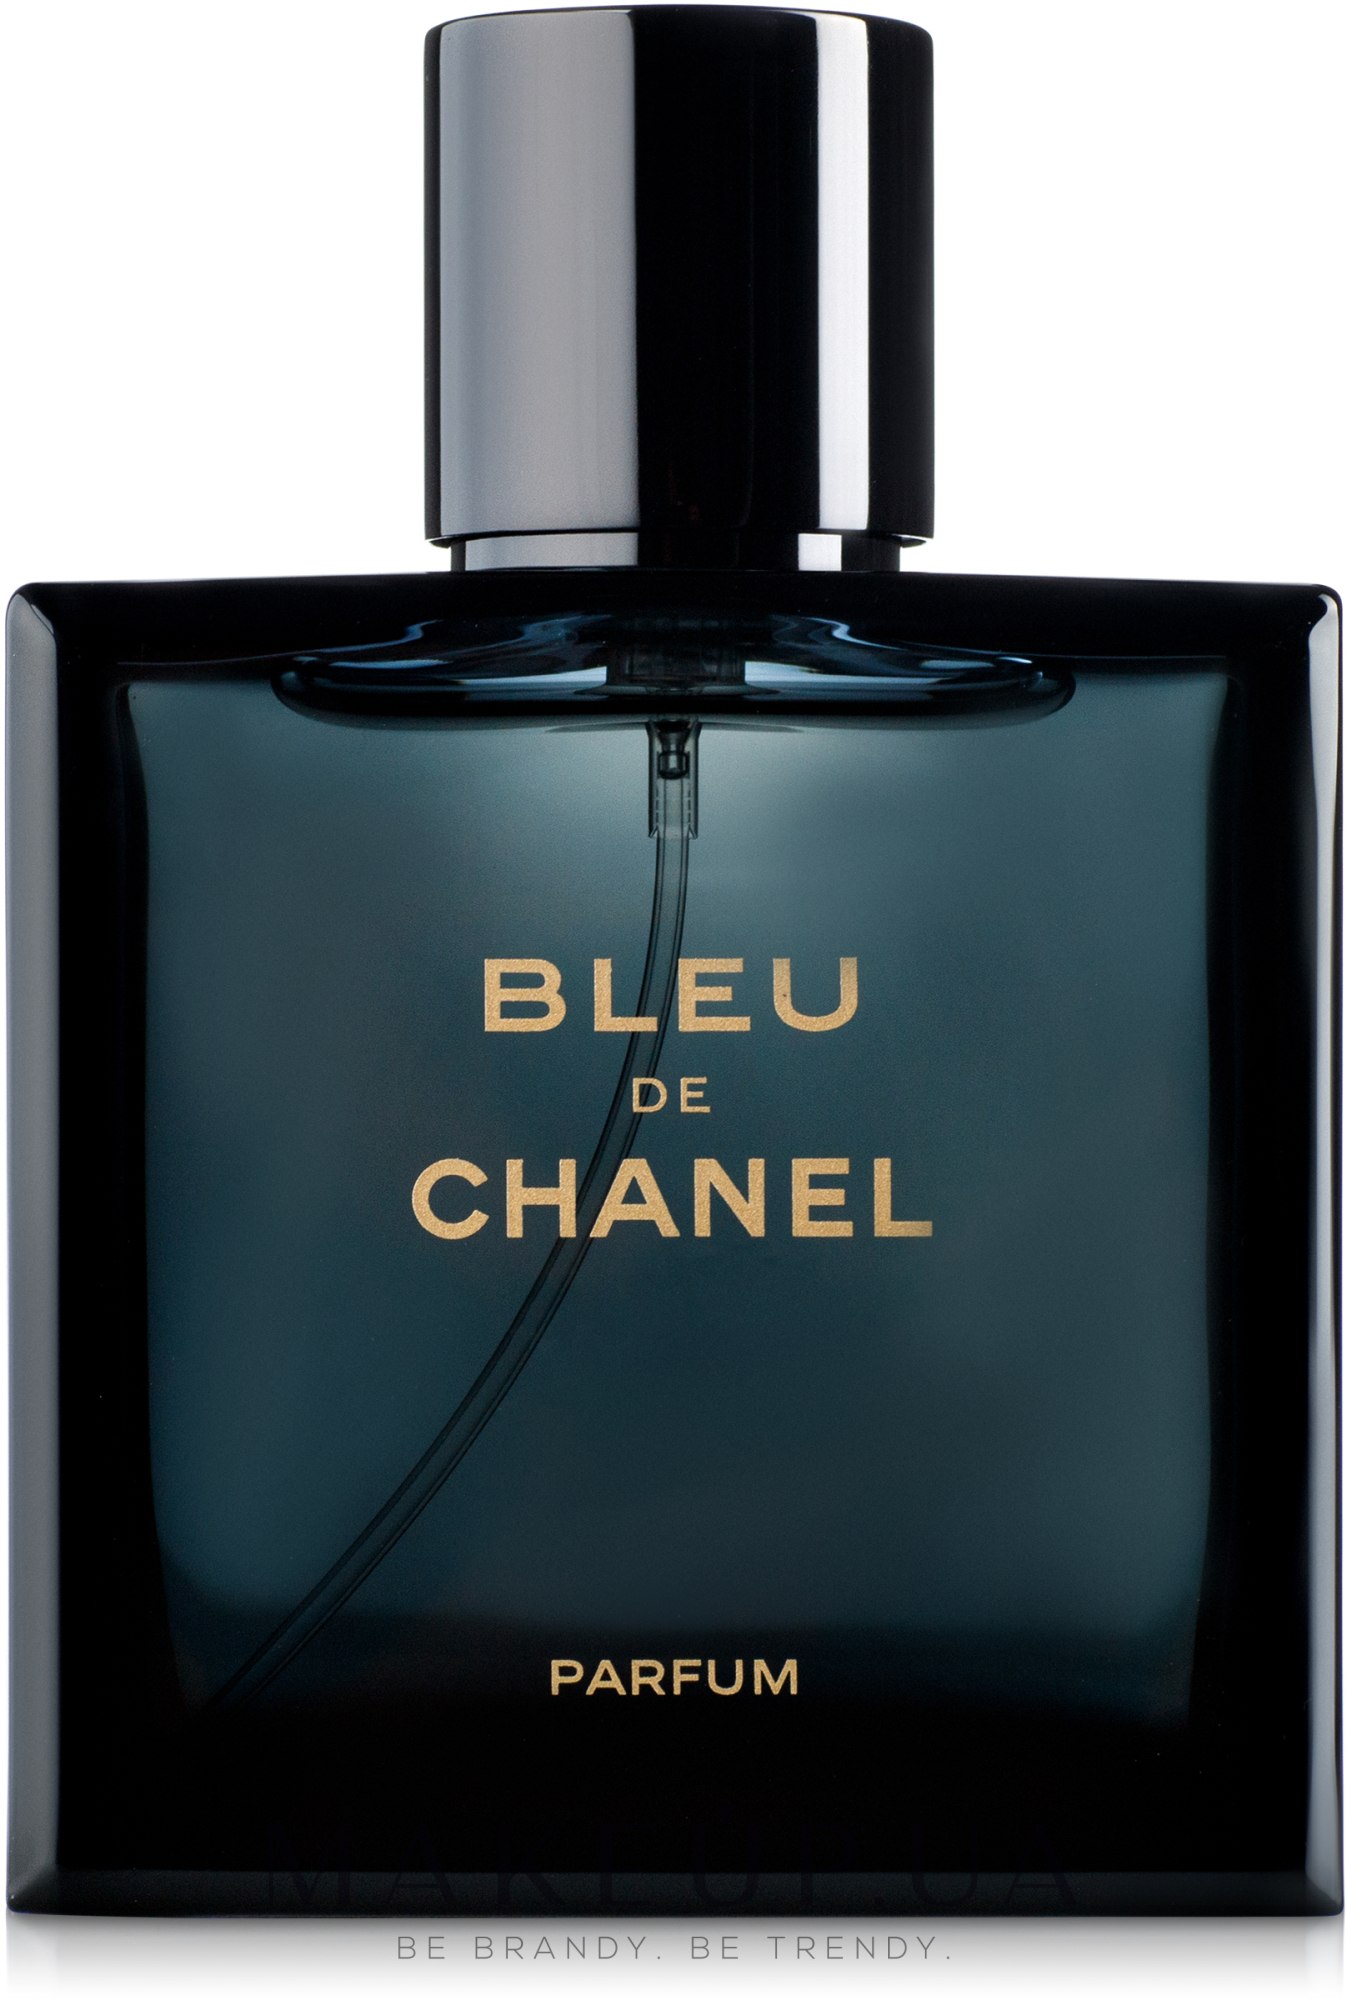 Bleu de chanel москва. Chanel bleu de Chanel Parfum 100 ml. Chanel Blue de Chanel 100ml. Шанель духи мужские de canal 100мл. Мужской Парфюм Blue Chanеl, 100 мл.